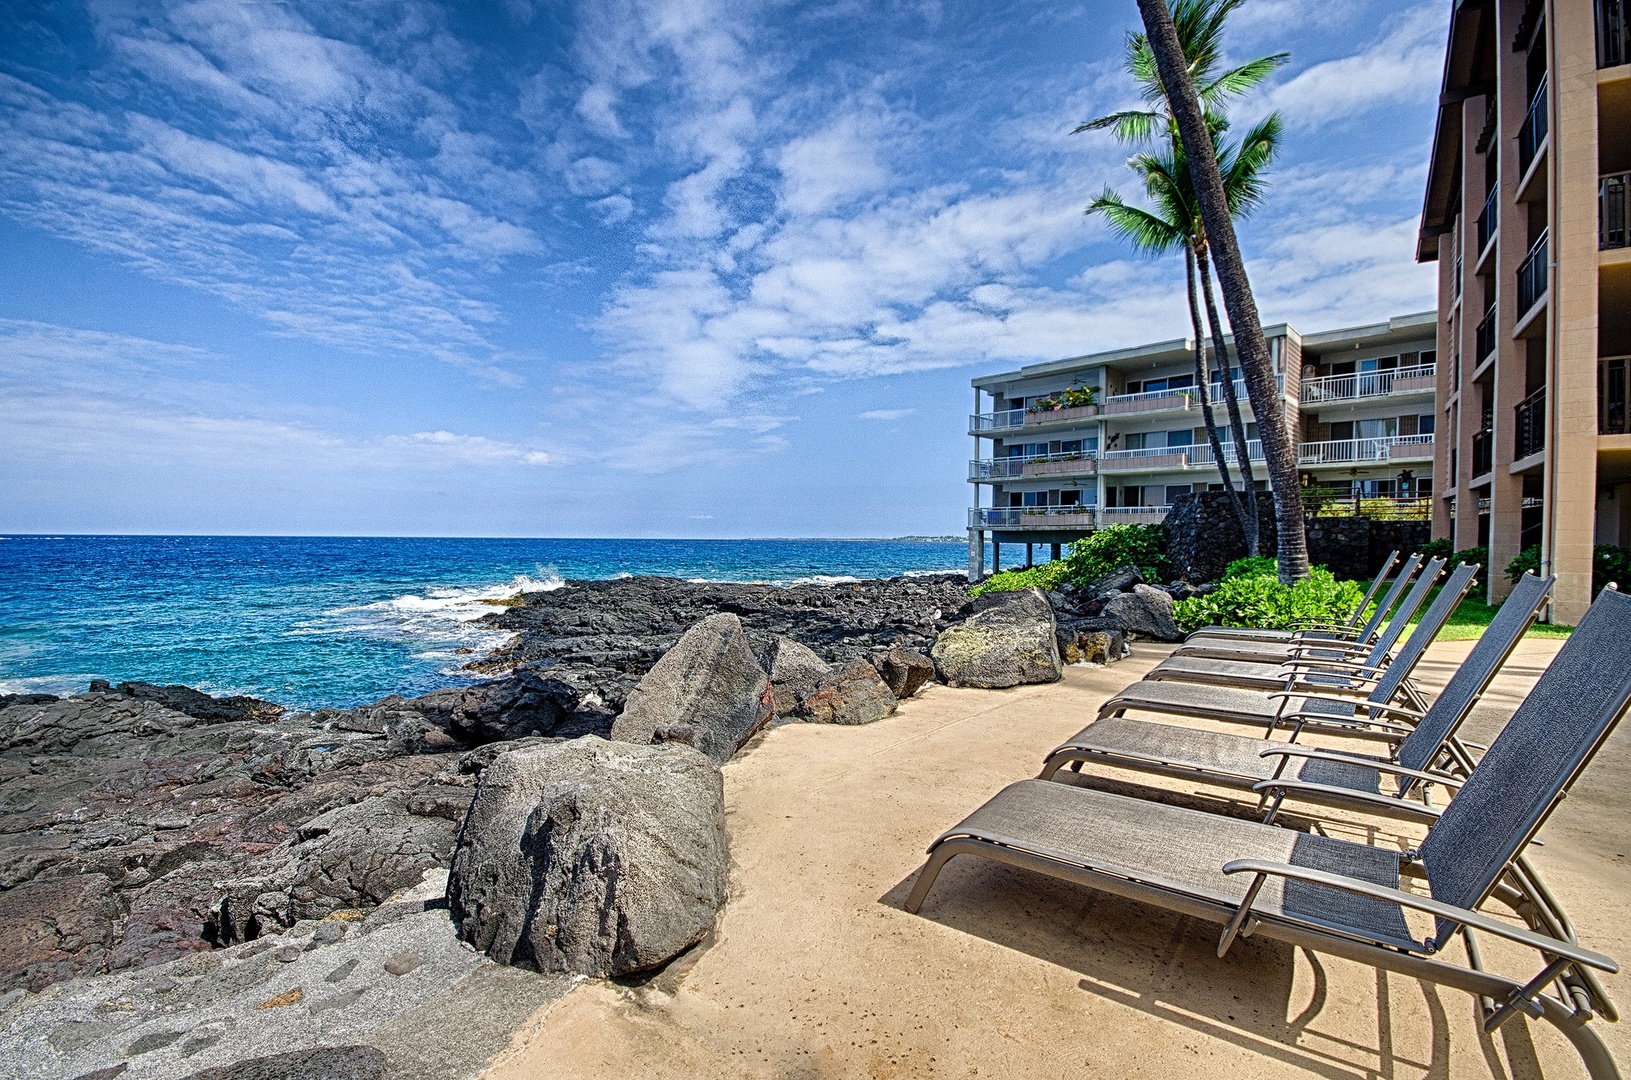 Kailua Kona Vacation Rentals, Kona Makai 2103 - Lounge pool side at the man made beach area